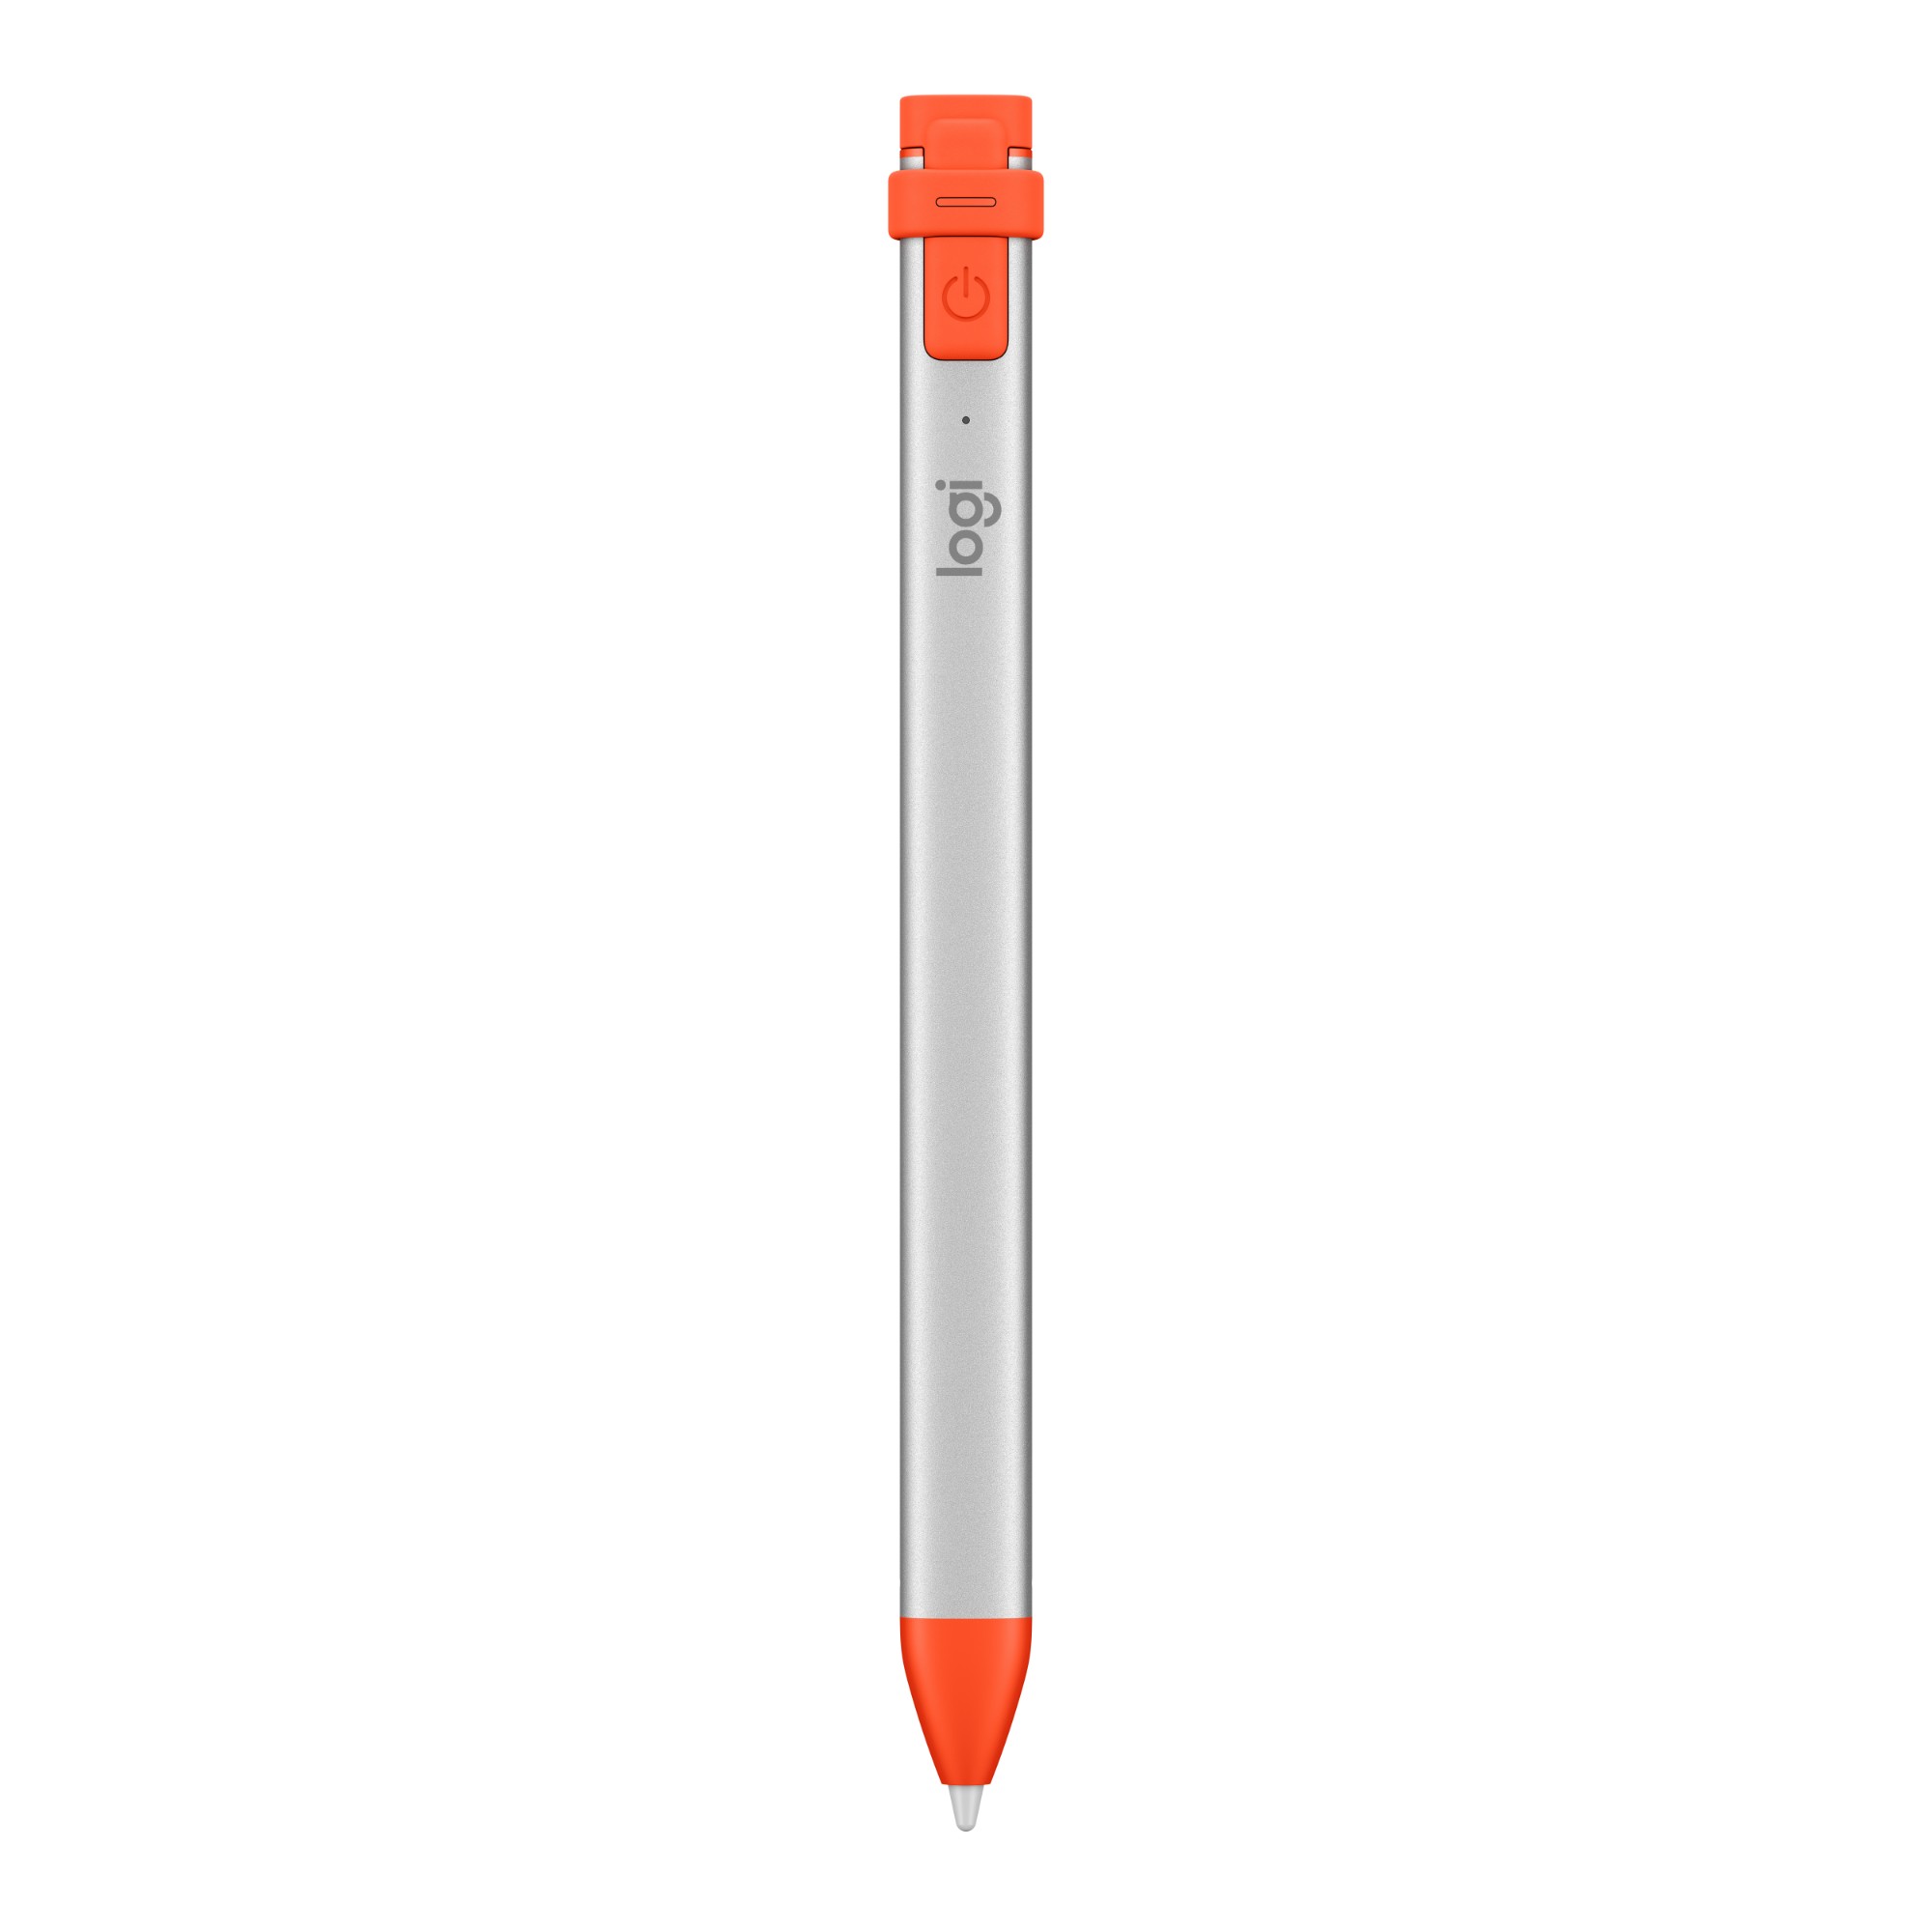 Logitech Crayon stylus pen 20 g Orange, White